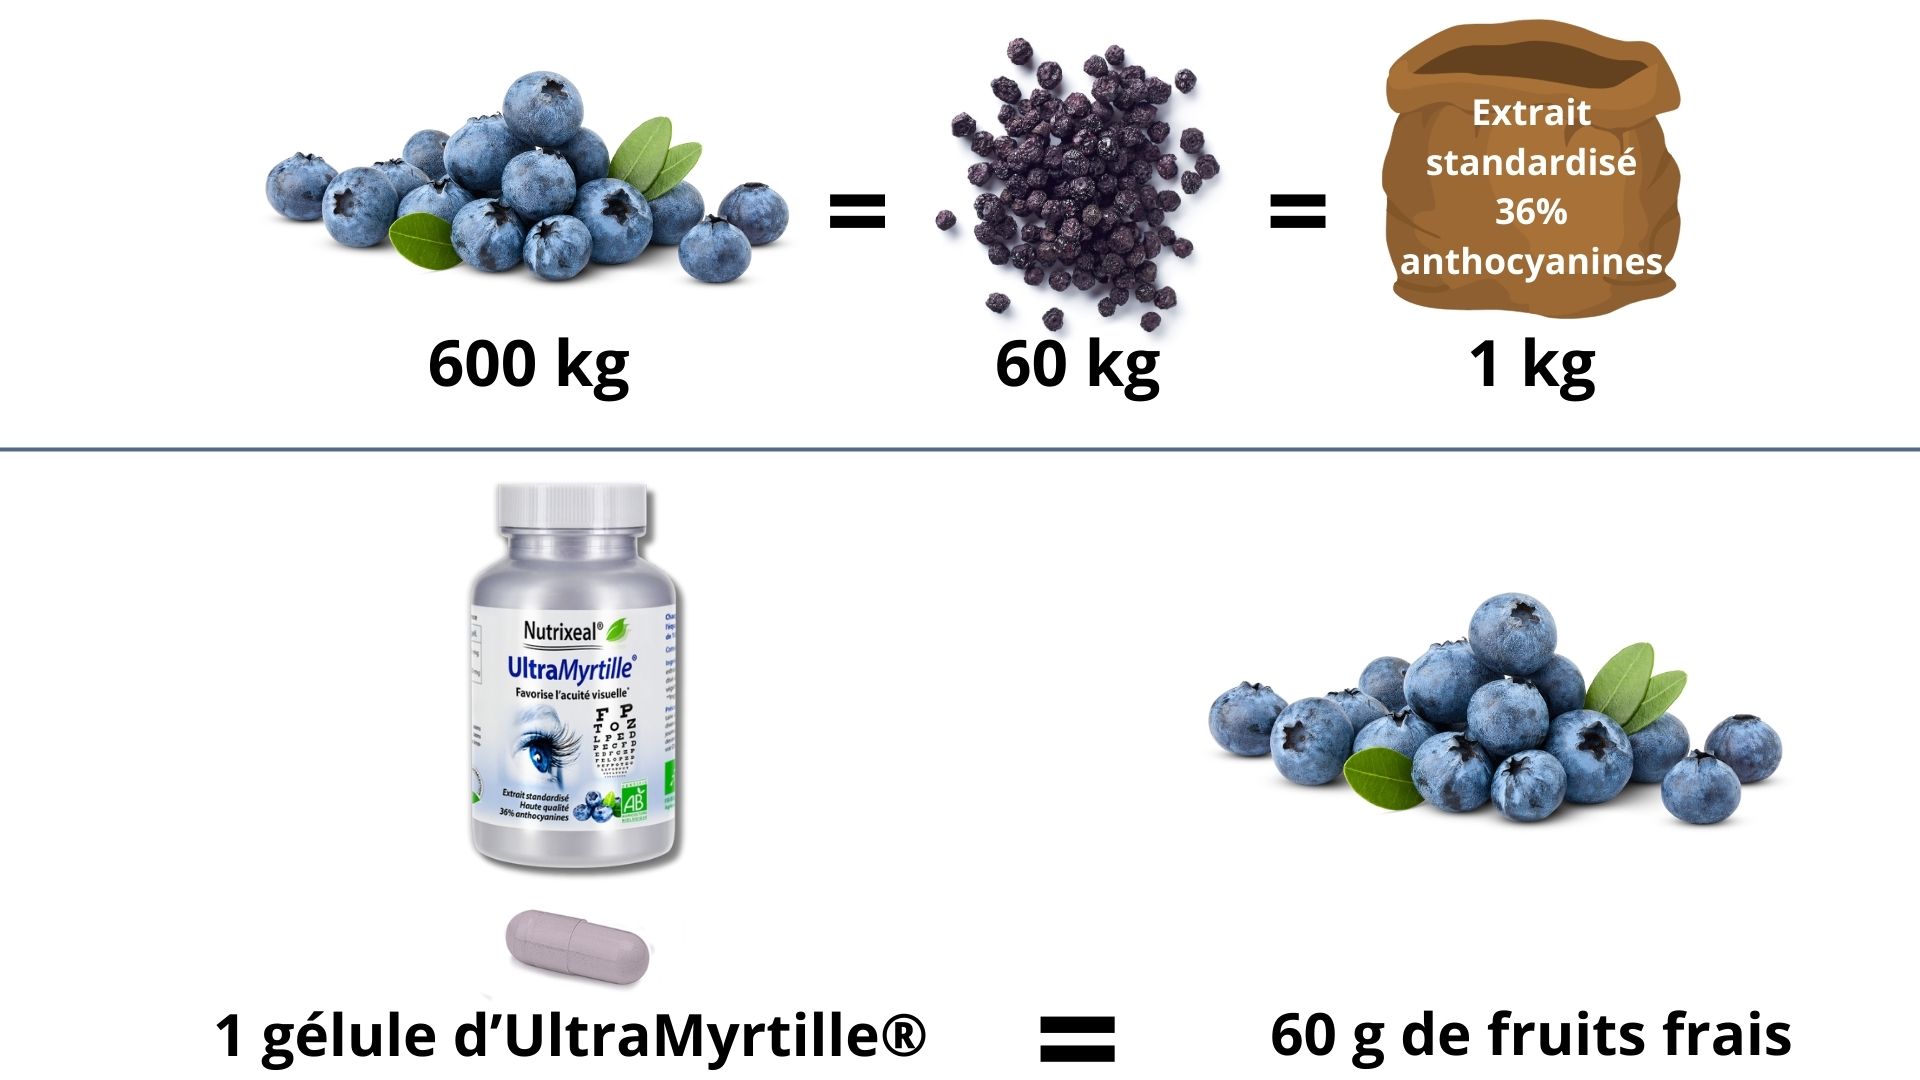 1 kg d’extrait de myrtilles concentré à 36% d’anthocyanines équivaut à plus de 60 kg de fruits secs, soit environ 600 kg de fruits frais